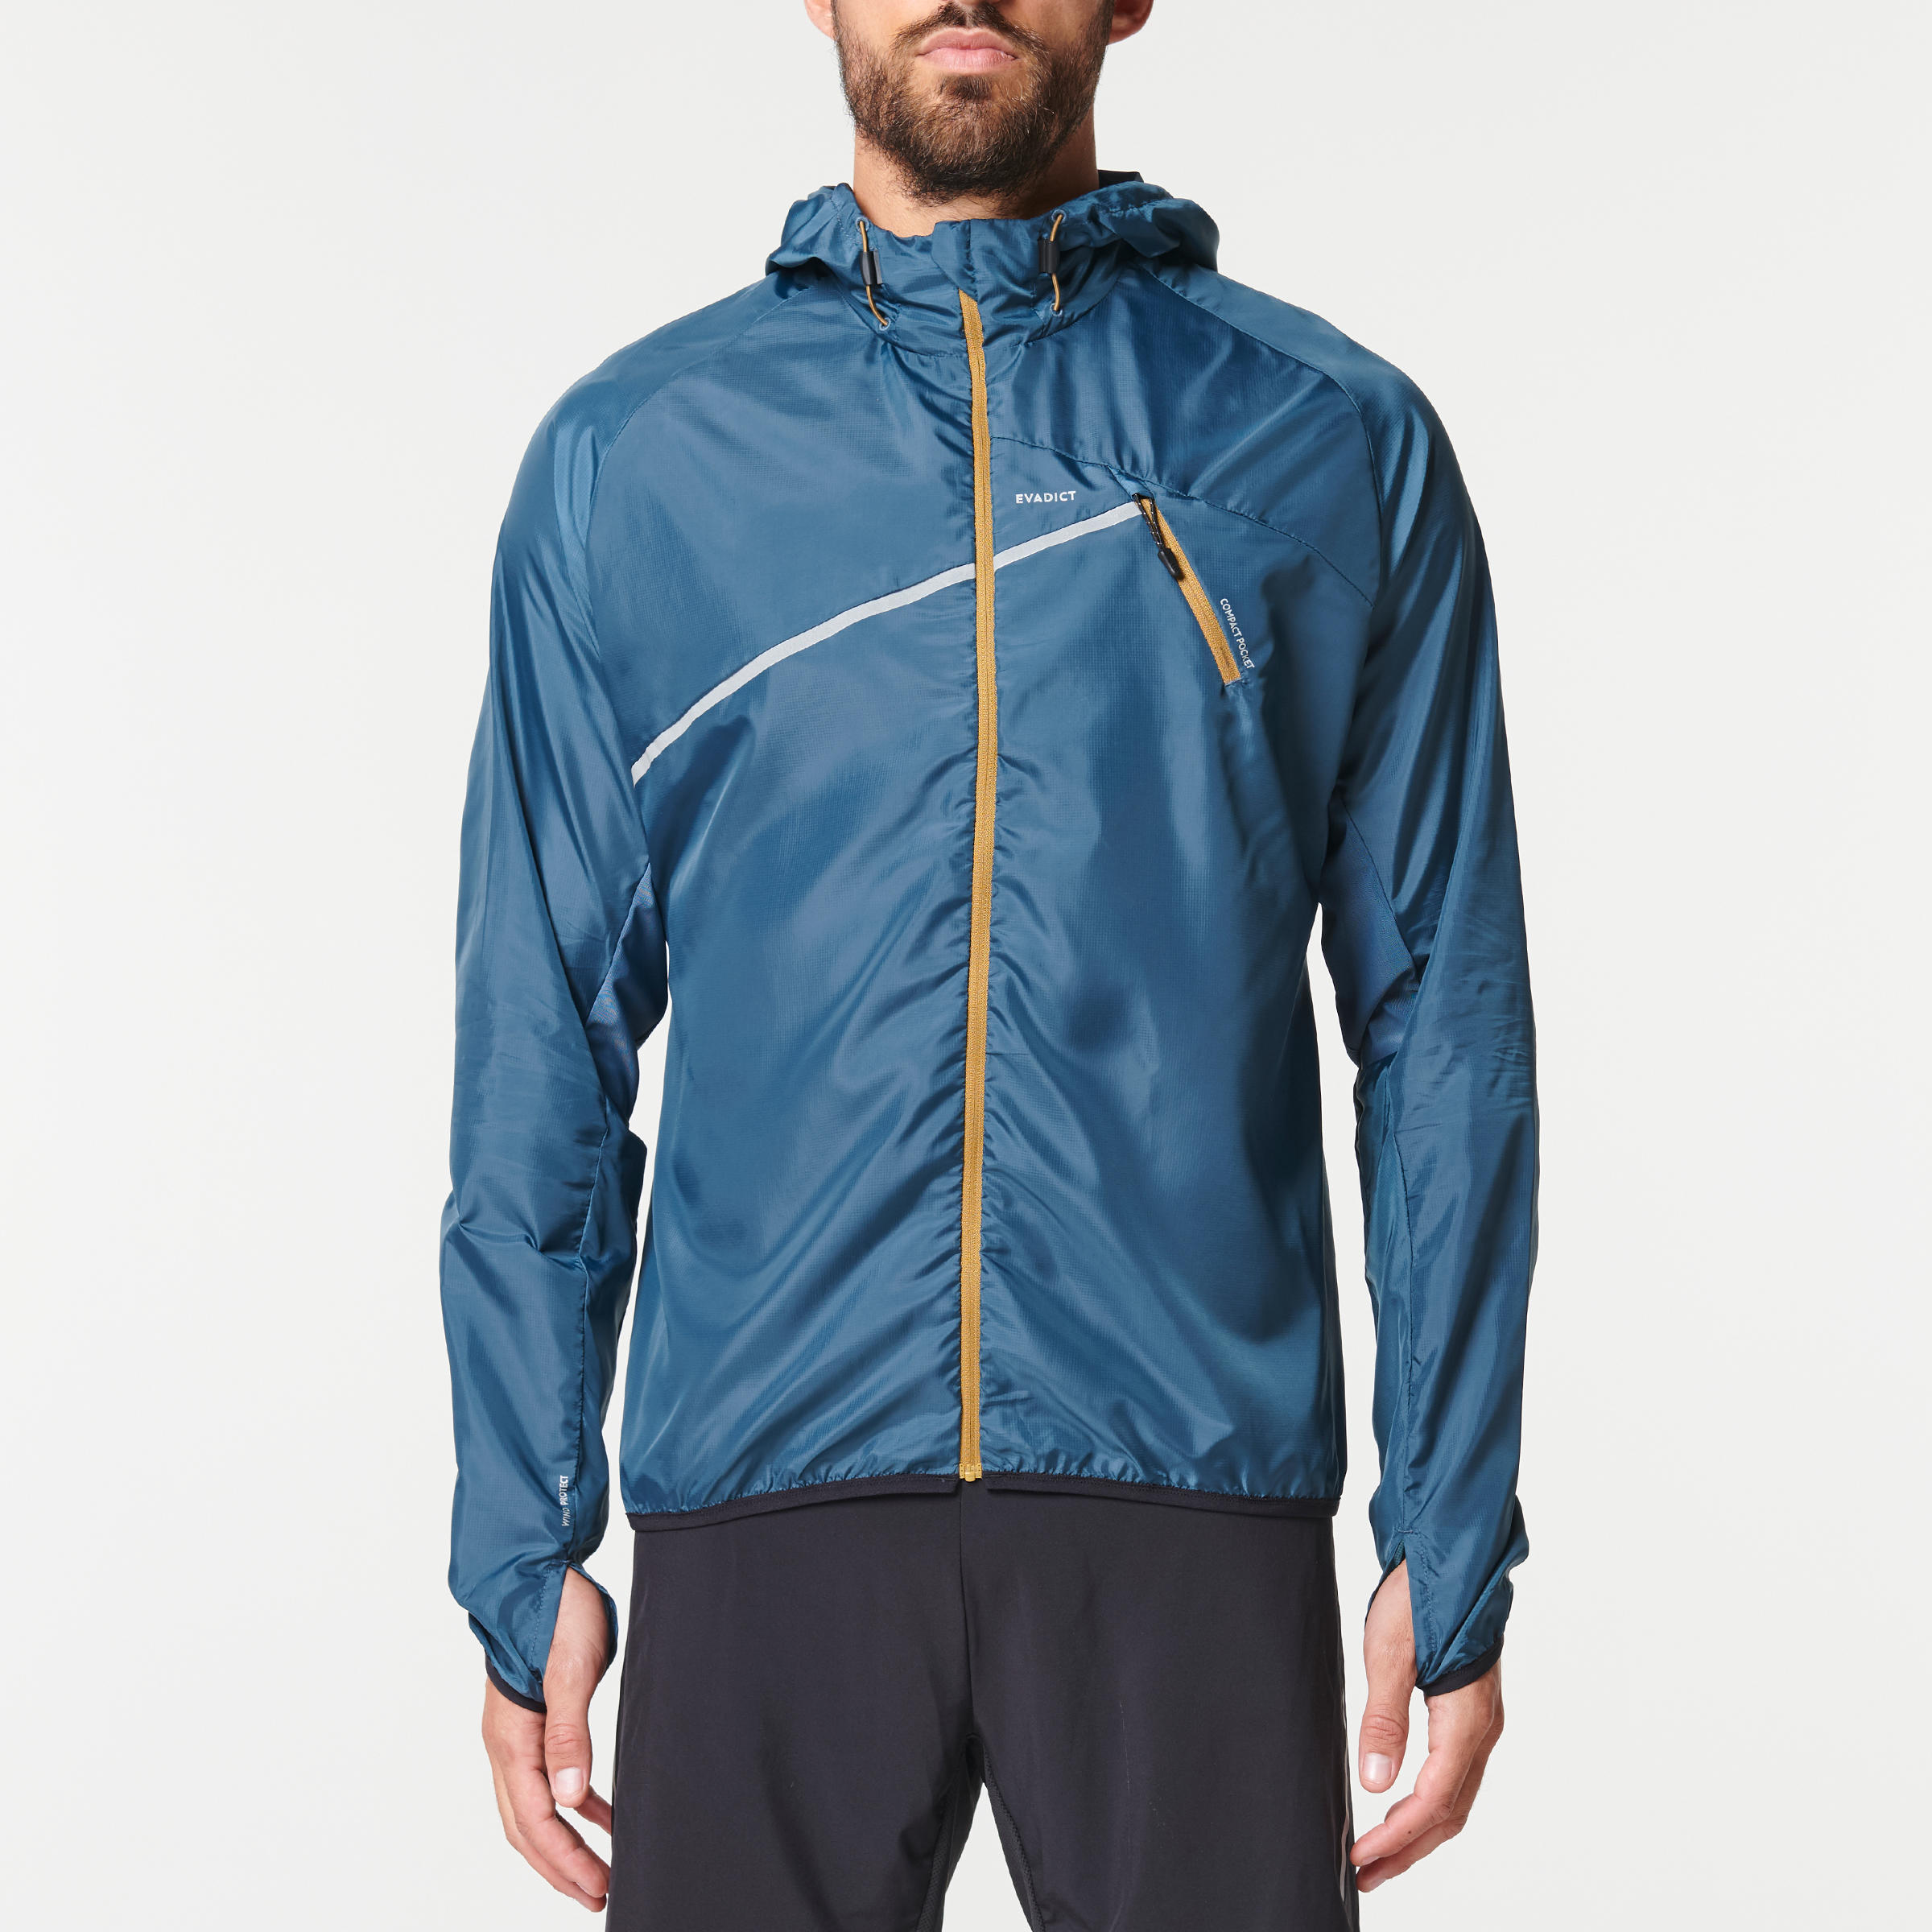 decathlon trail running jacket